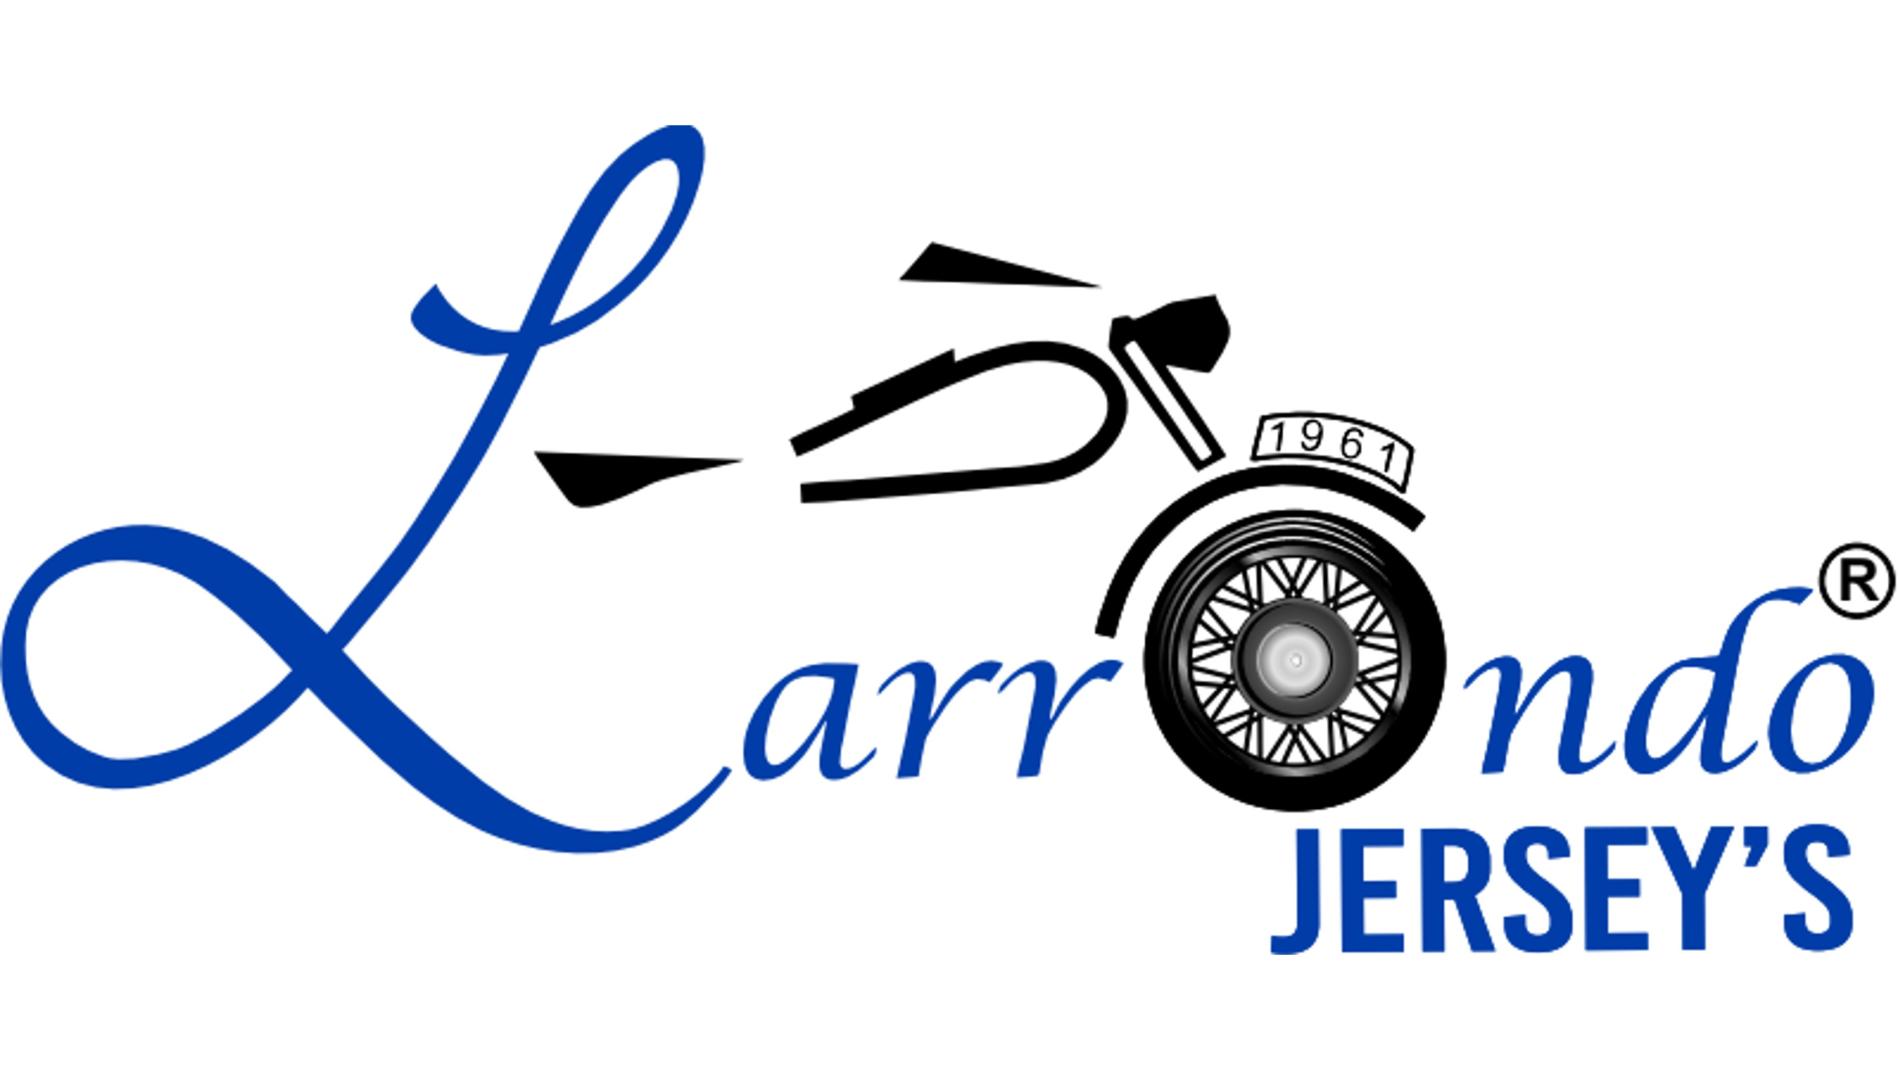 jersey-lebarron-JERSEYS LARRON.jpg